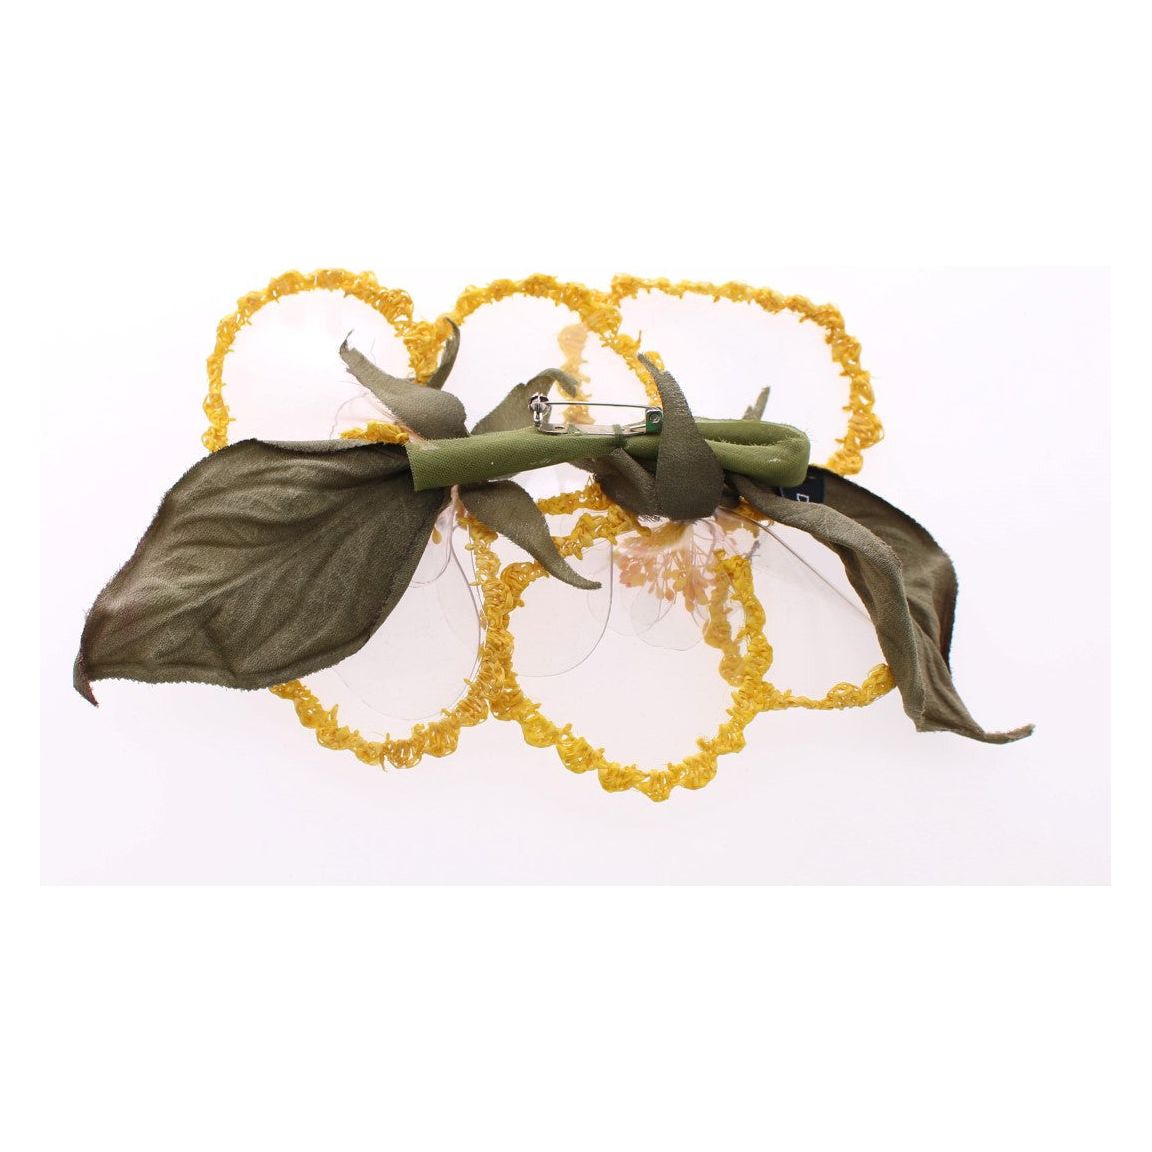 Dolce & Gabbana Exquisite Handmade Floral Silk Brooch Brooch floral-transparent-handmade-brooch